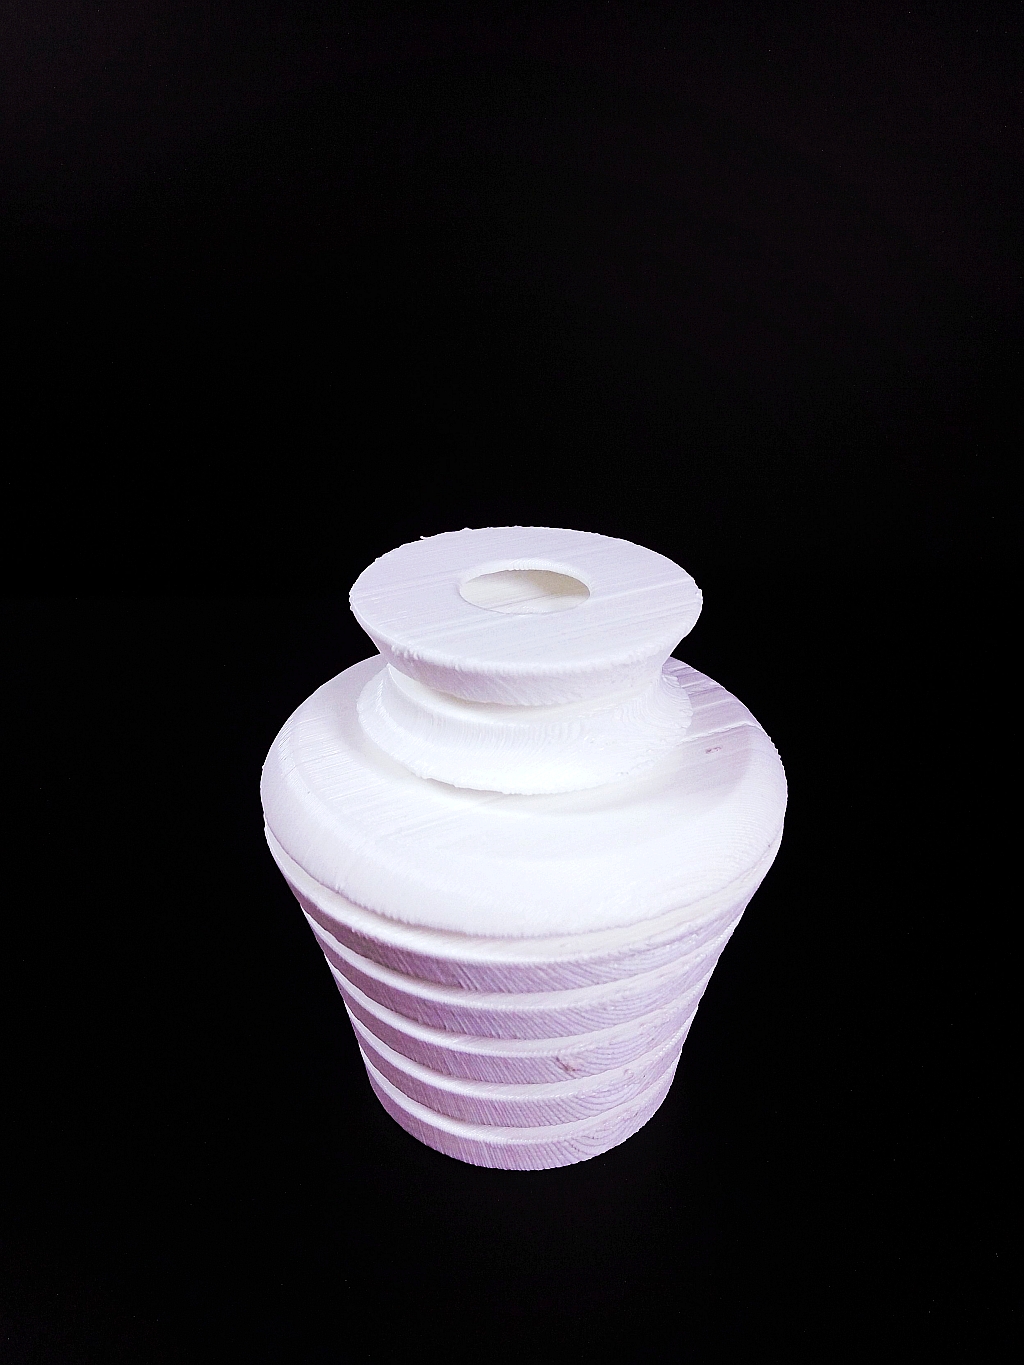 Vase in a Vase image